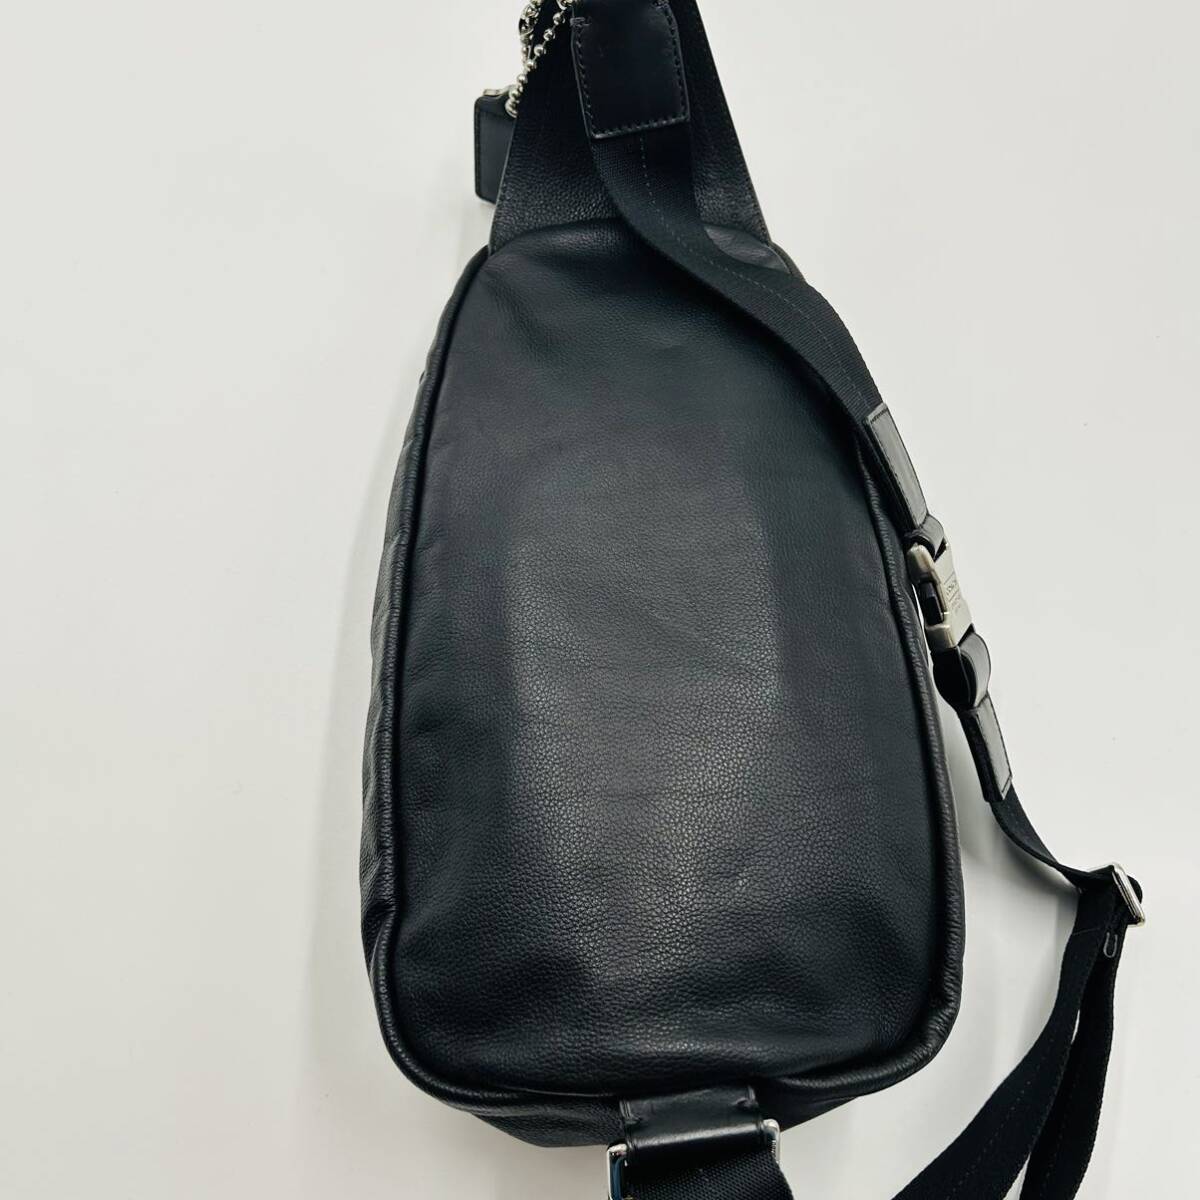 1 иен ~[ трудно найти товар ] трудно найти товар Coach COACH тонн pson сумка "body" сумка-пояс сумка на плечо кожа чёрный мужской женский 